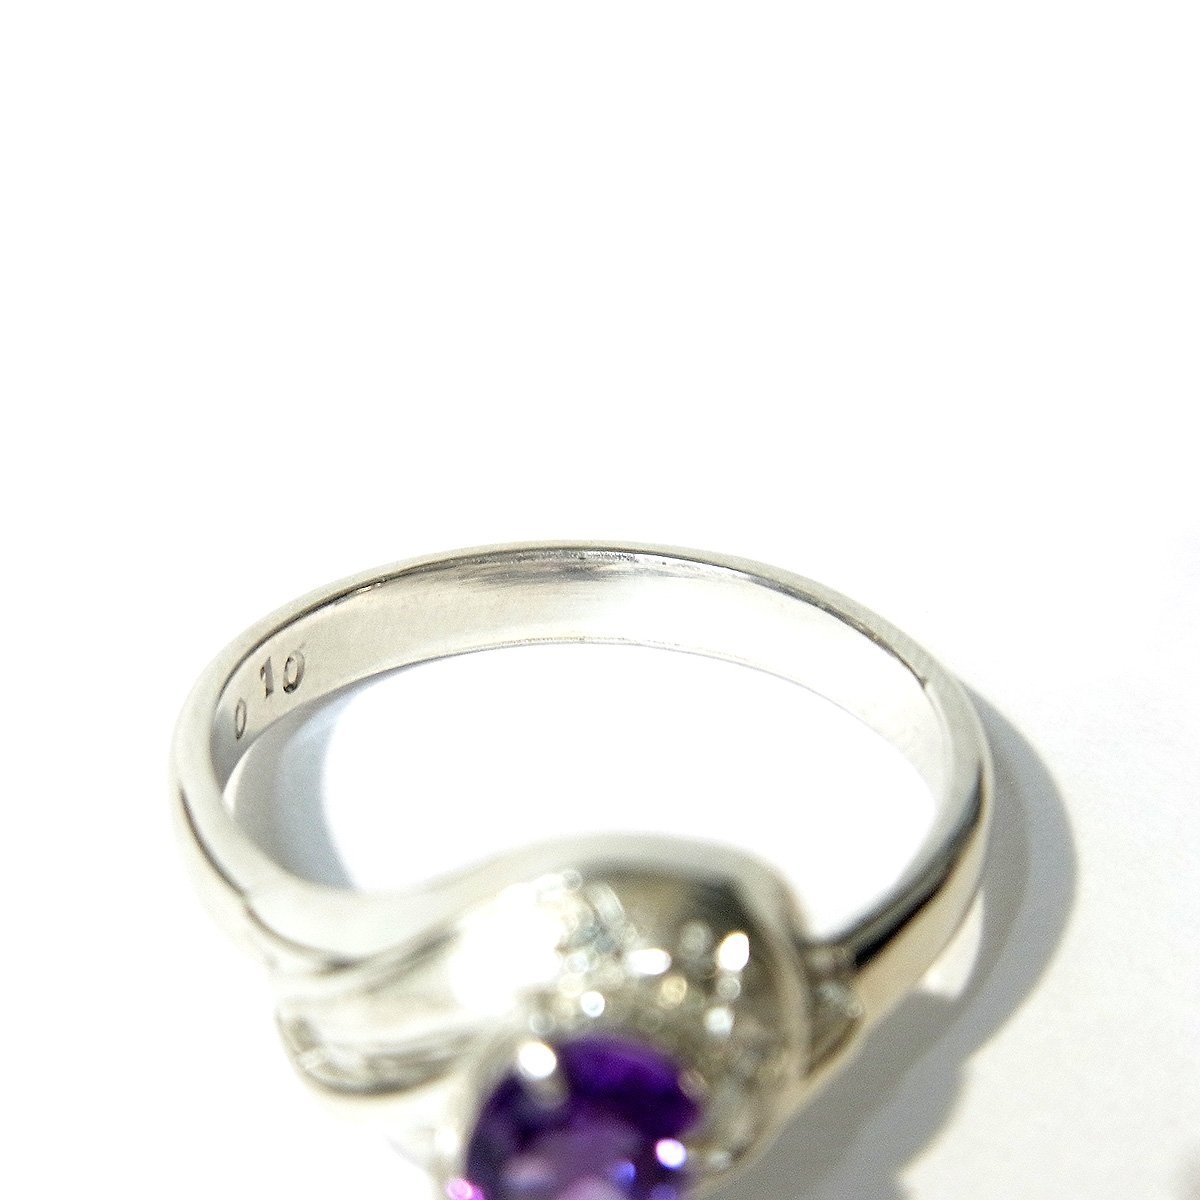 美品 Pt900 K14WG デザインリング 指輪 ダイヤ 紫石 ホワイトゴールド プラチナ 約13号 0.10ct 総重量約4.0g 超音波洗浄済み 〓_画像6